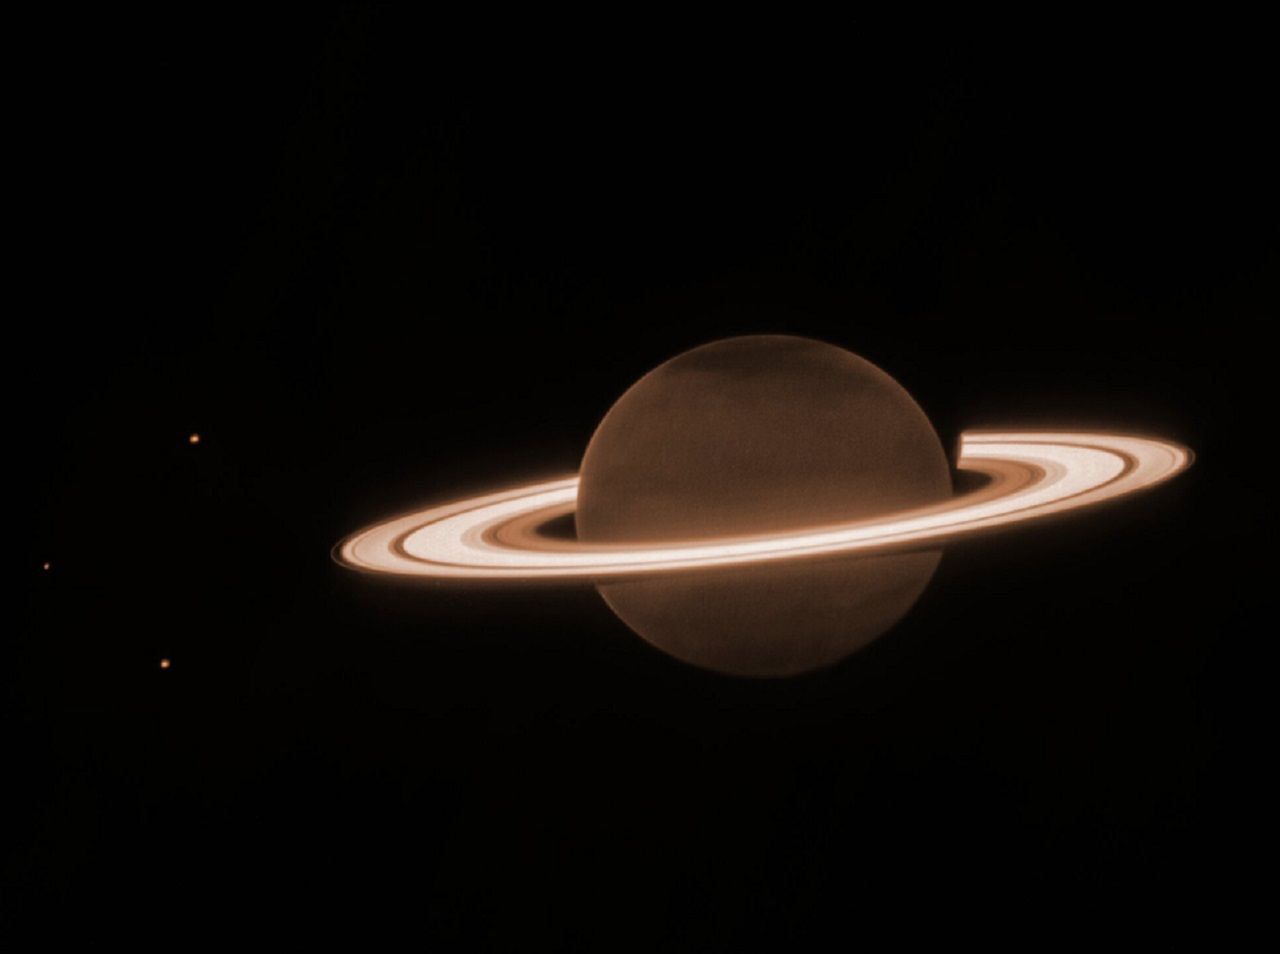 Una nuova incredibile immagine dal James Webb Telescope mostra Saturno come mai prima d’ora!